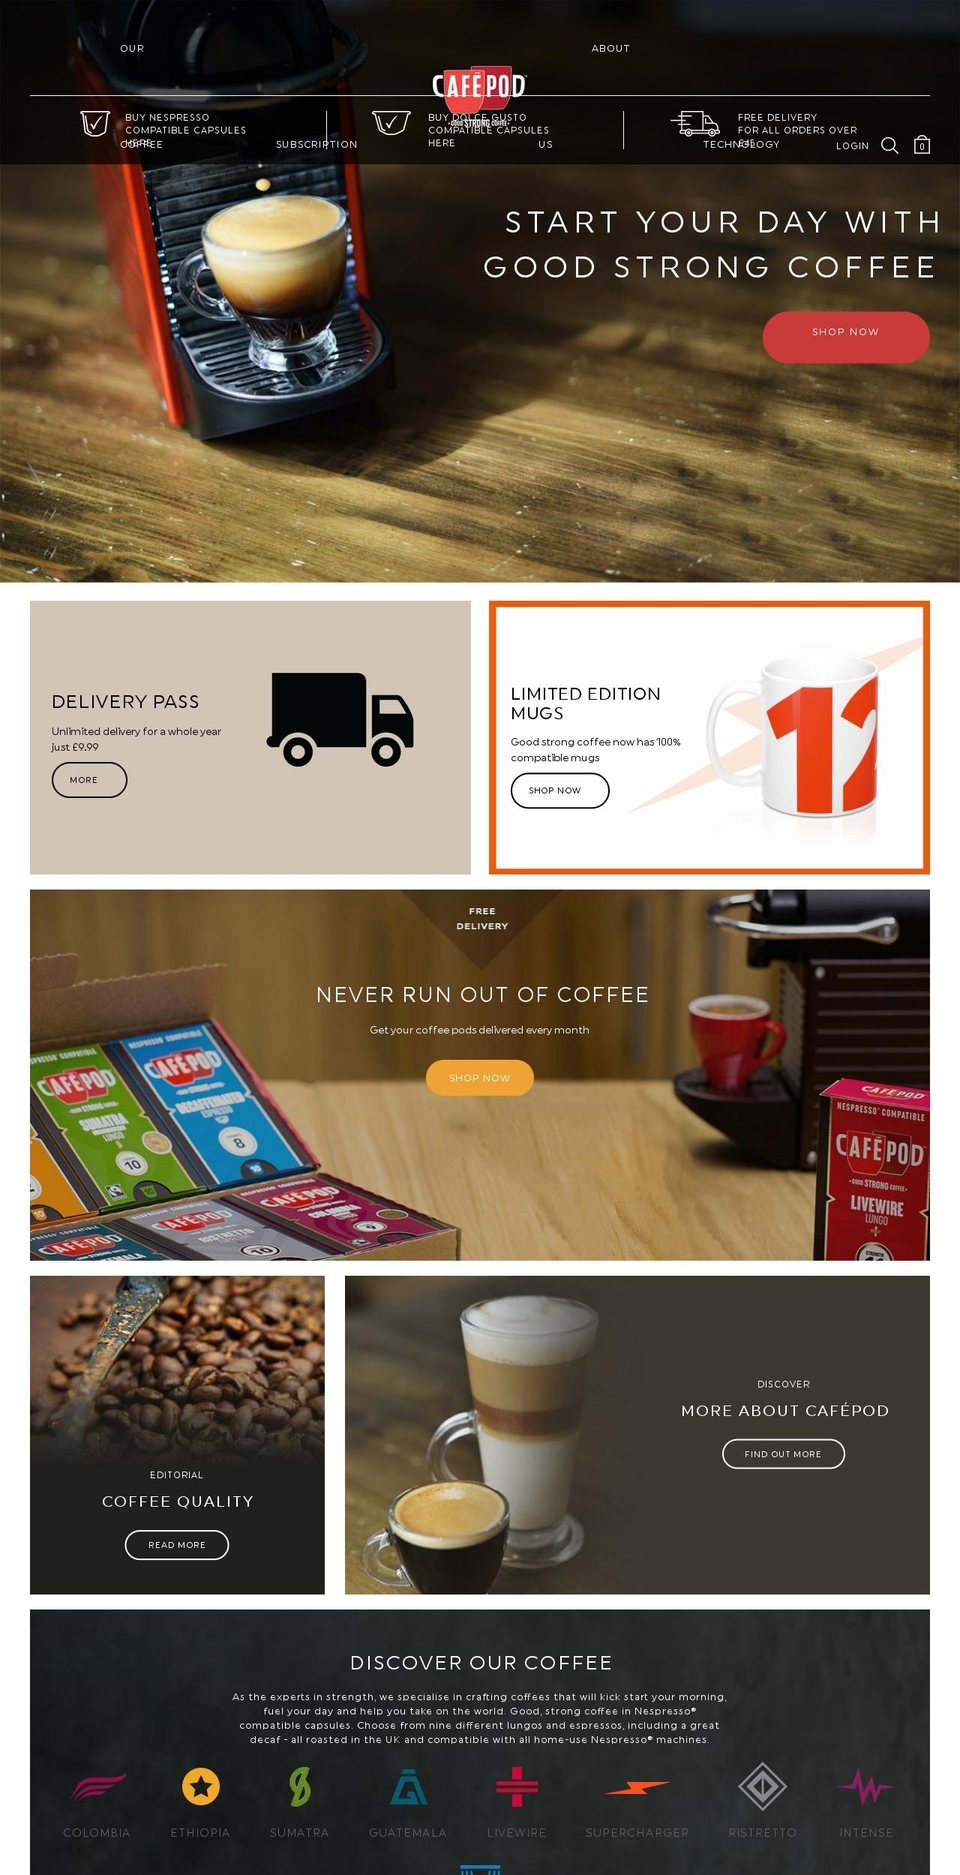 Flex Shopify theme site example cafepod.com